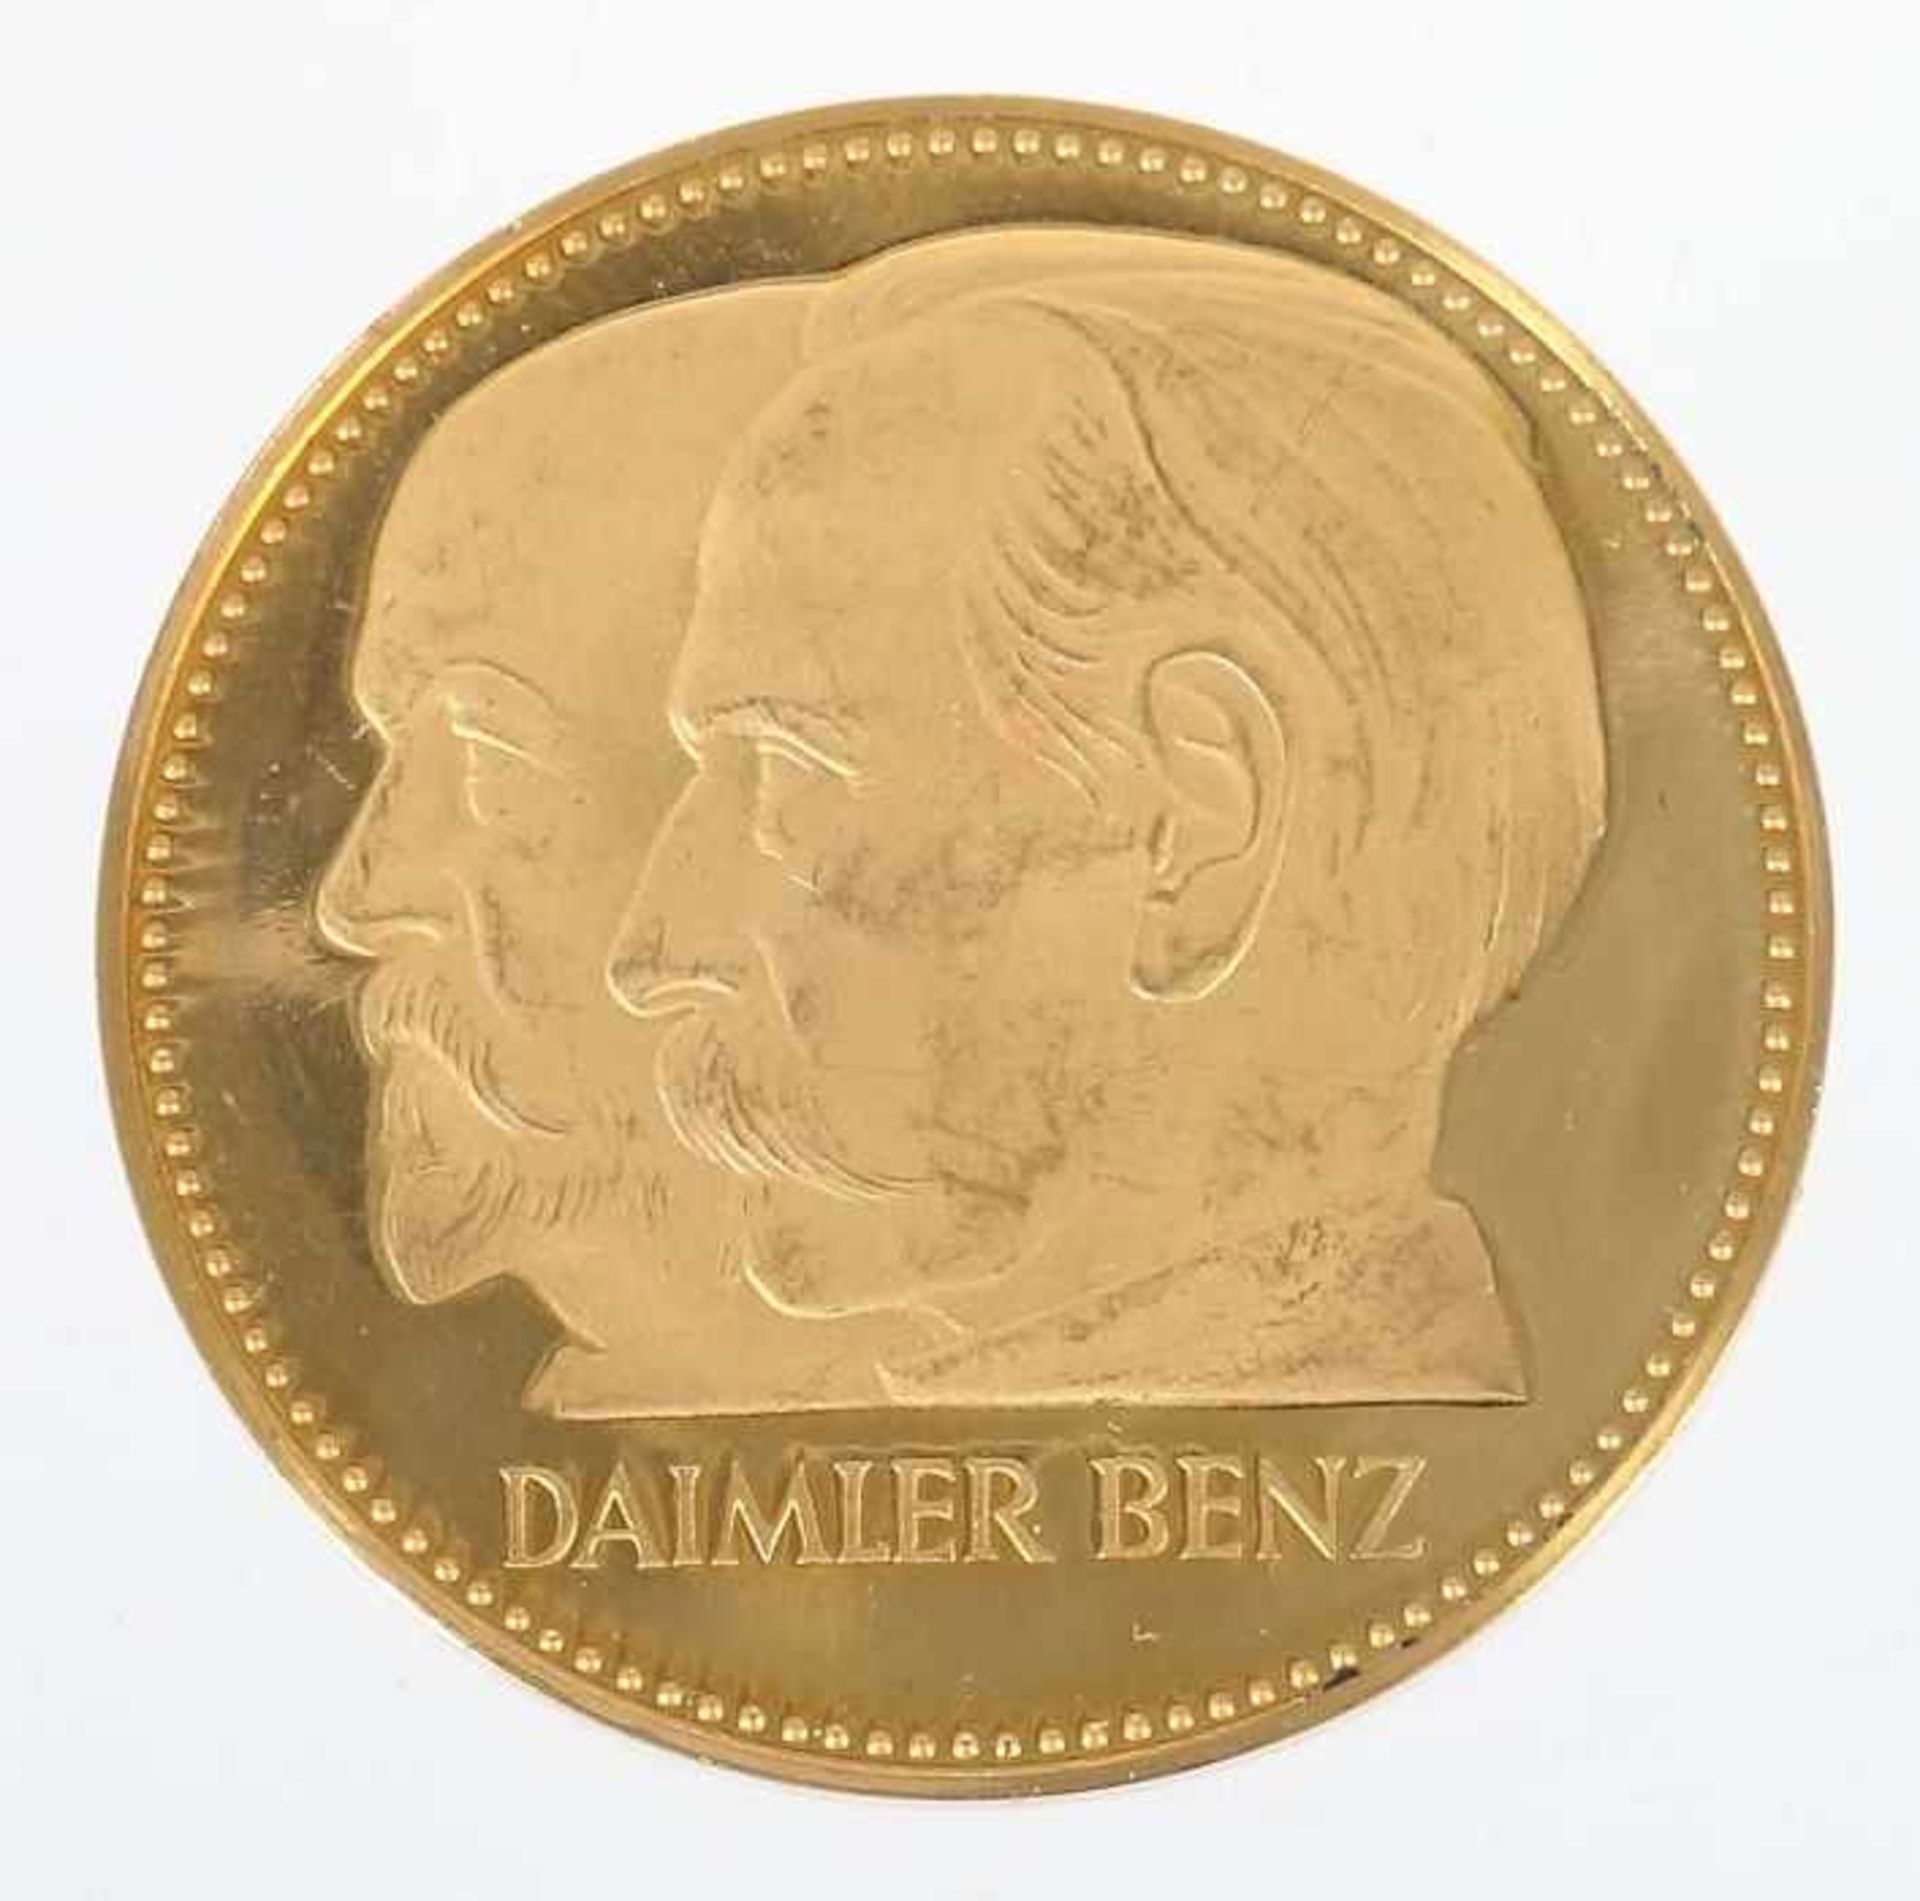 Goldmedaille Daimler BenzDeutschland, 1961, Gold 900, ca. 34,83 g, averse mit Portraits Gottlieb